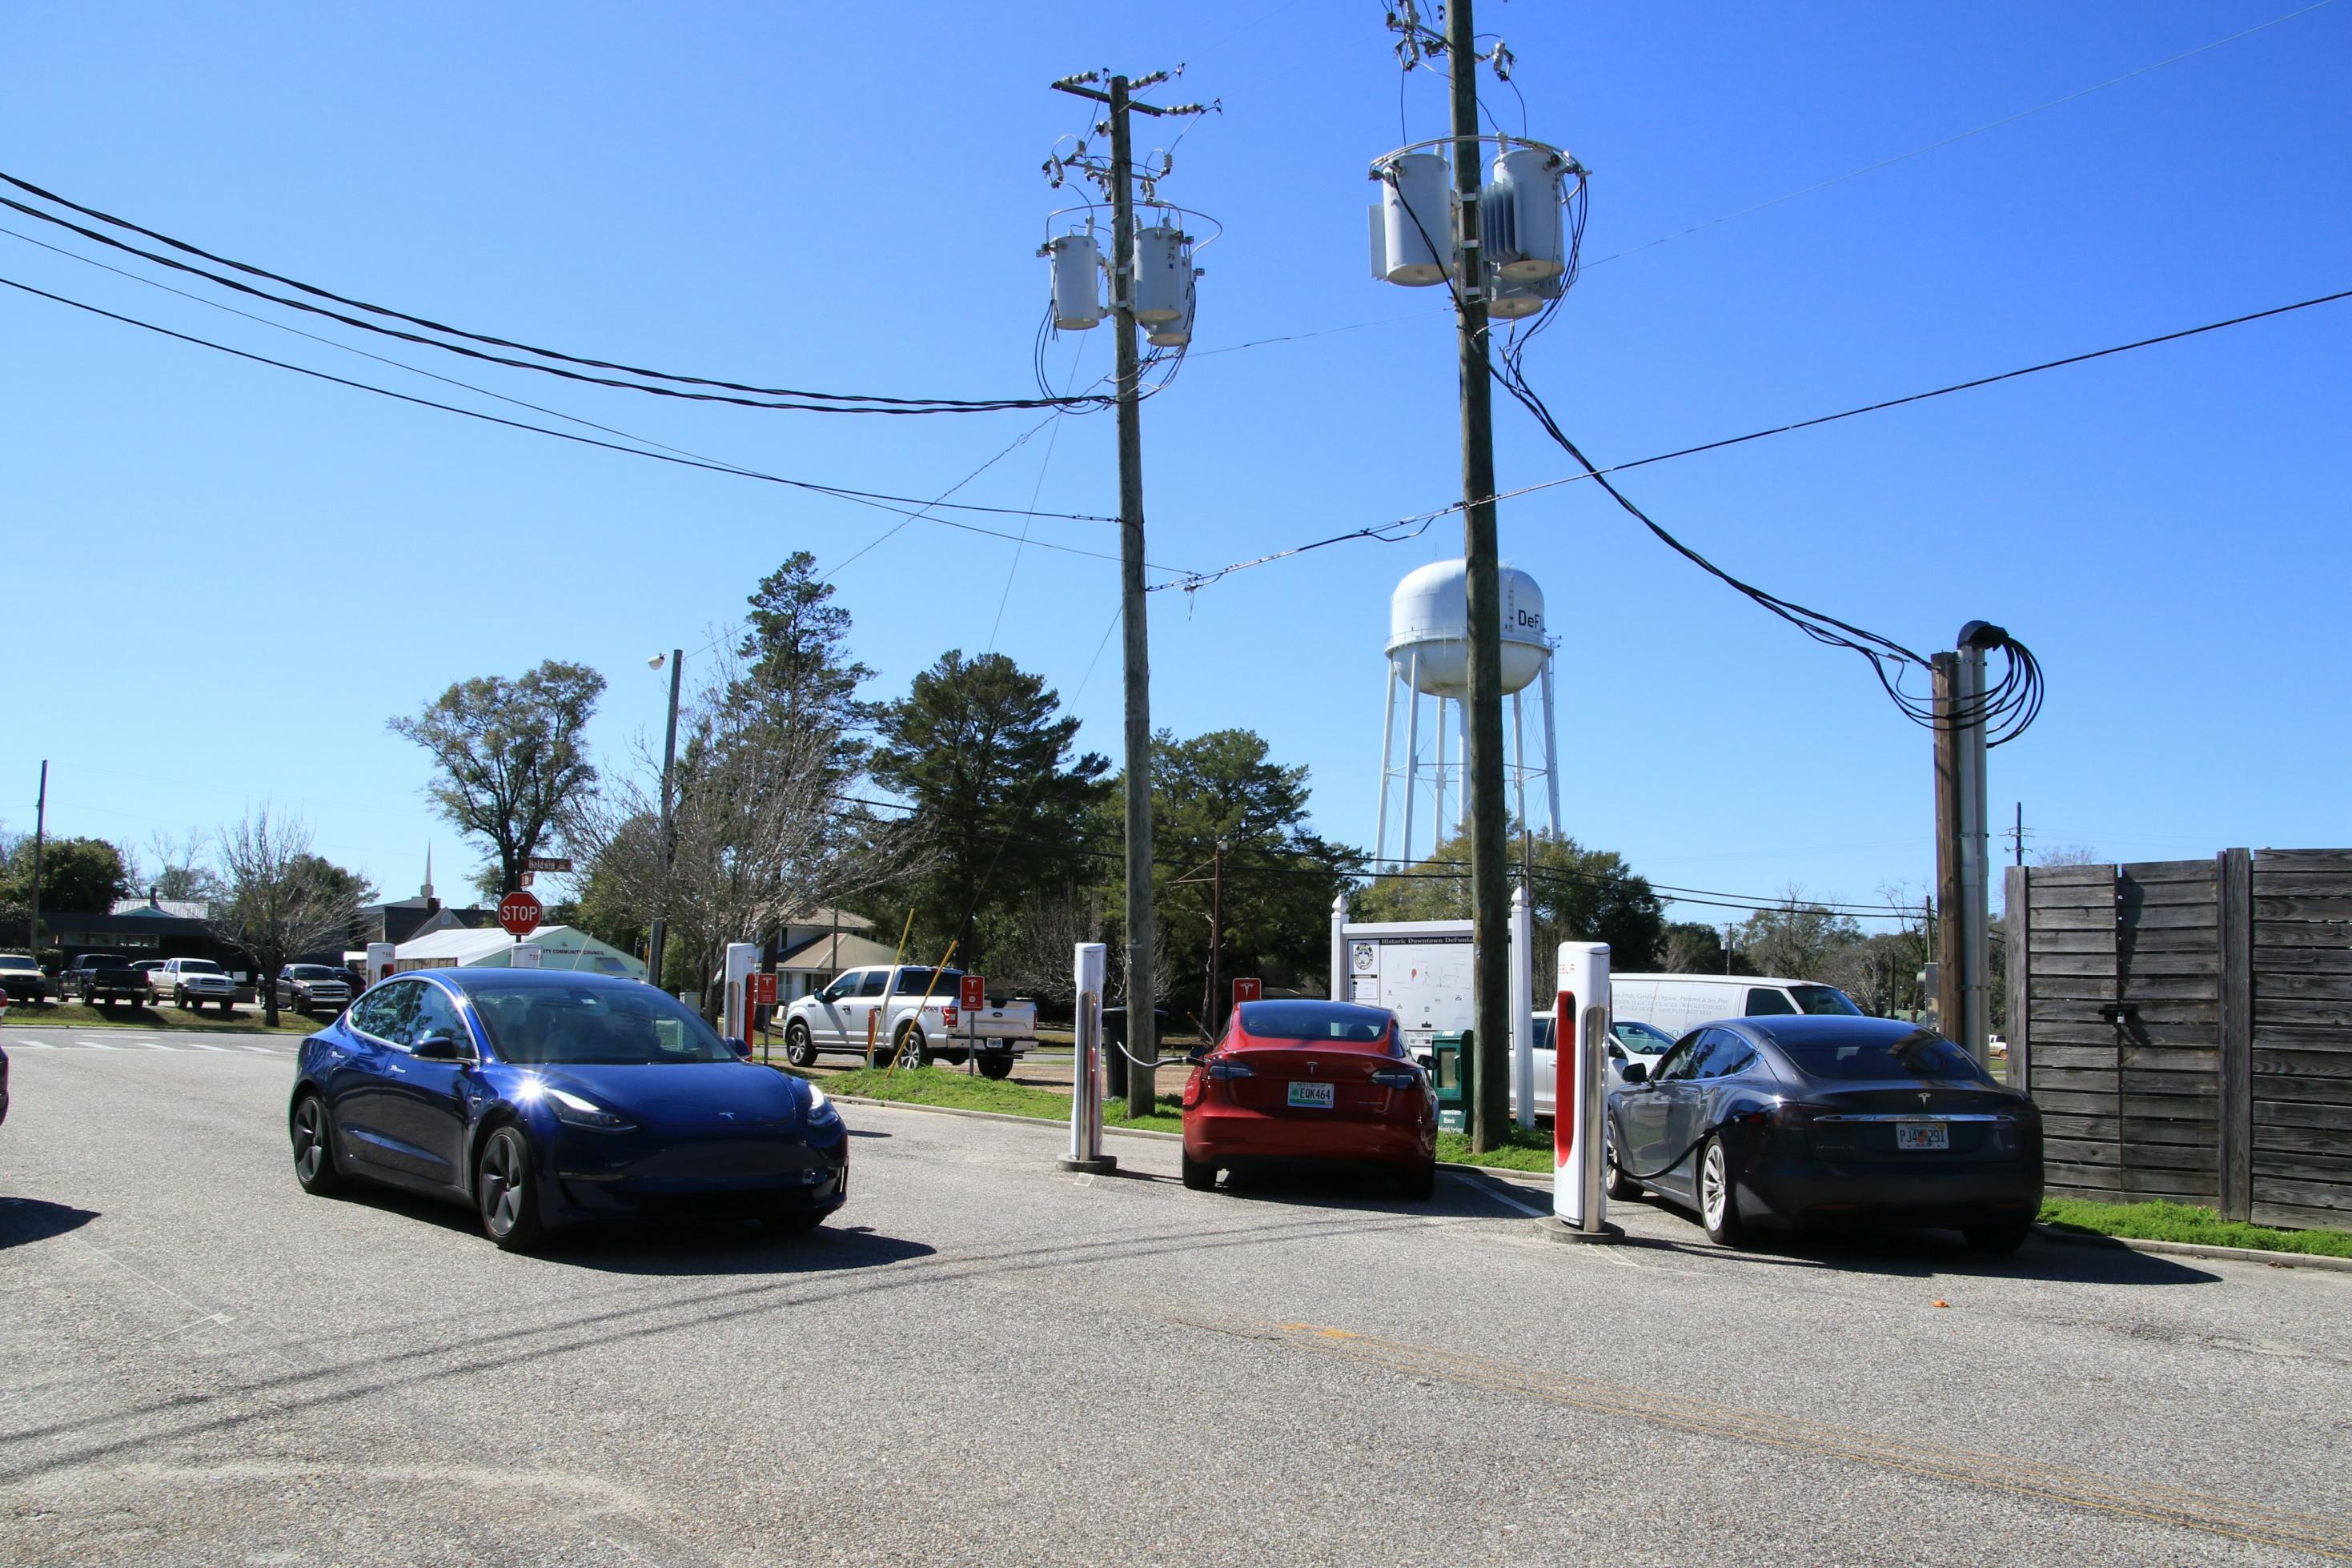 Ein Auto fährt über eine Straße, im Hintergrund parken zwei weitere Autos und zapfen Strom.